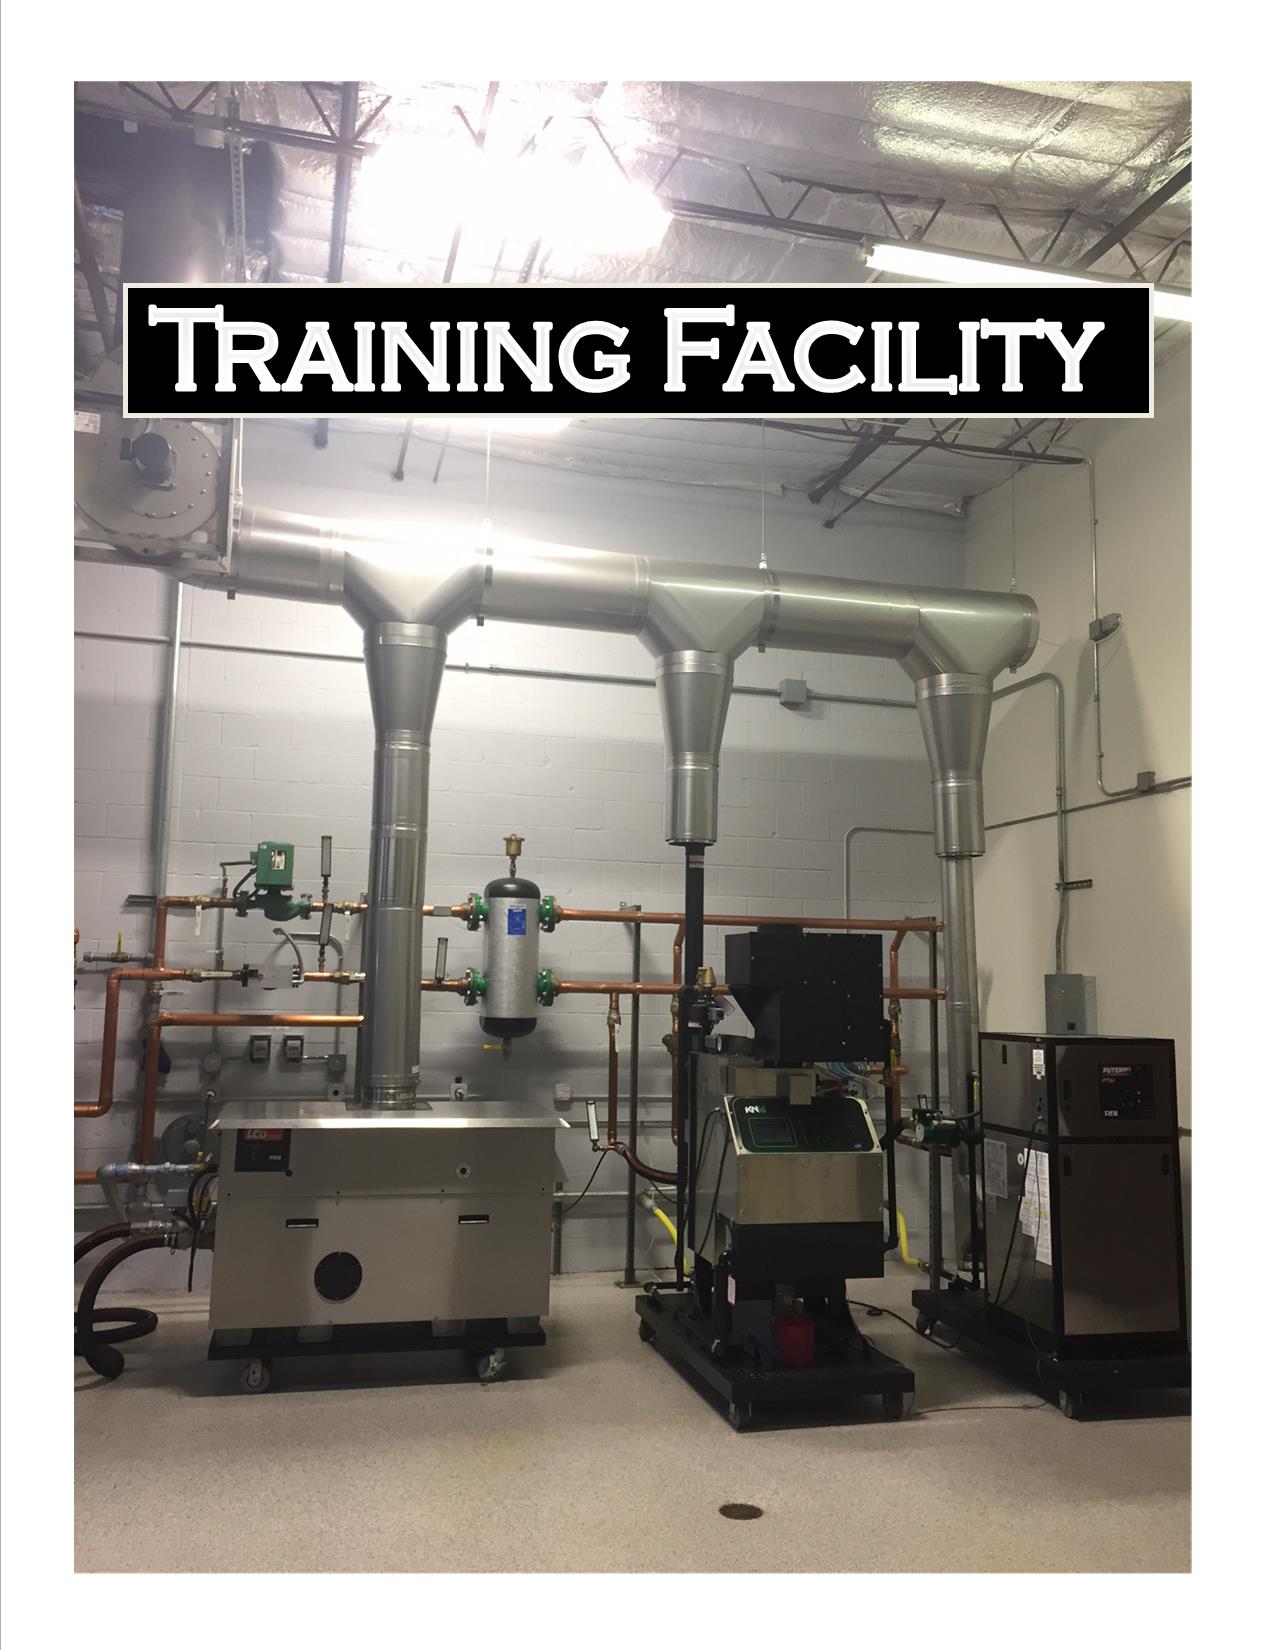 Boiler Training Australia